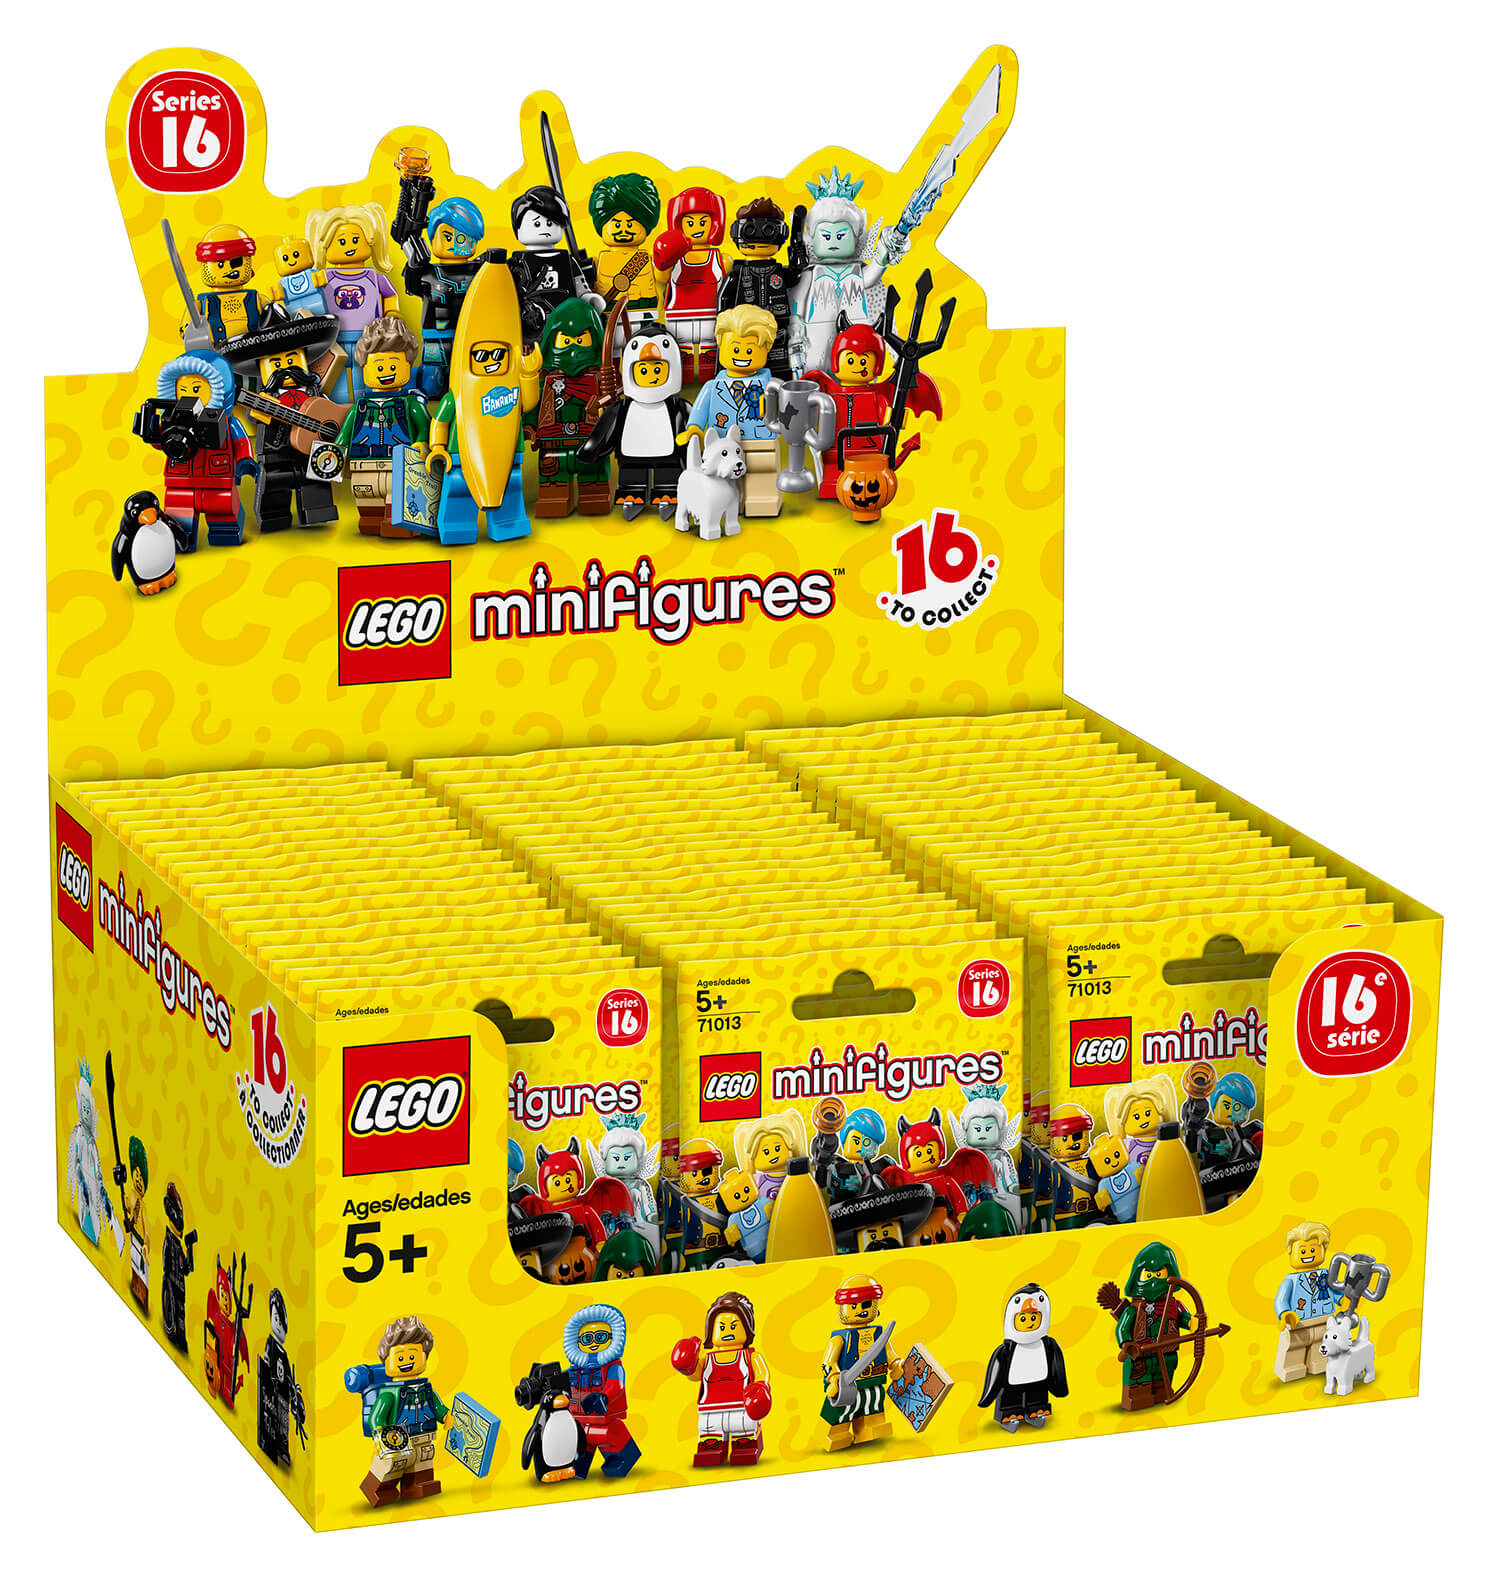 Collezione Completa LEGO 71013 Minifigures Serie 16 